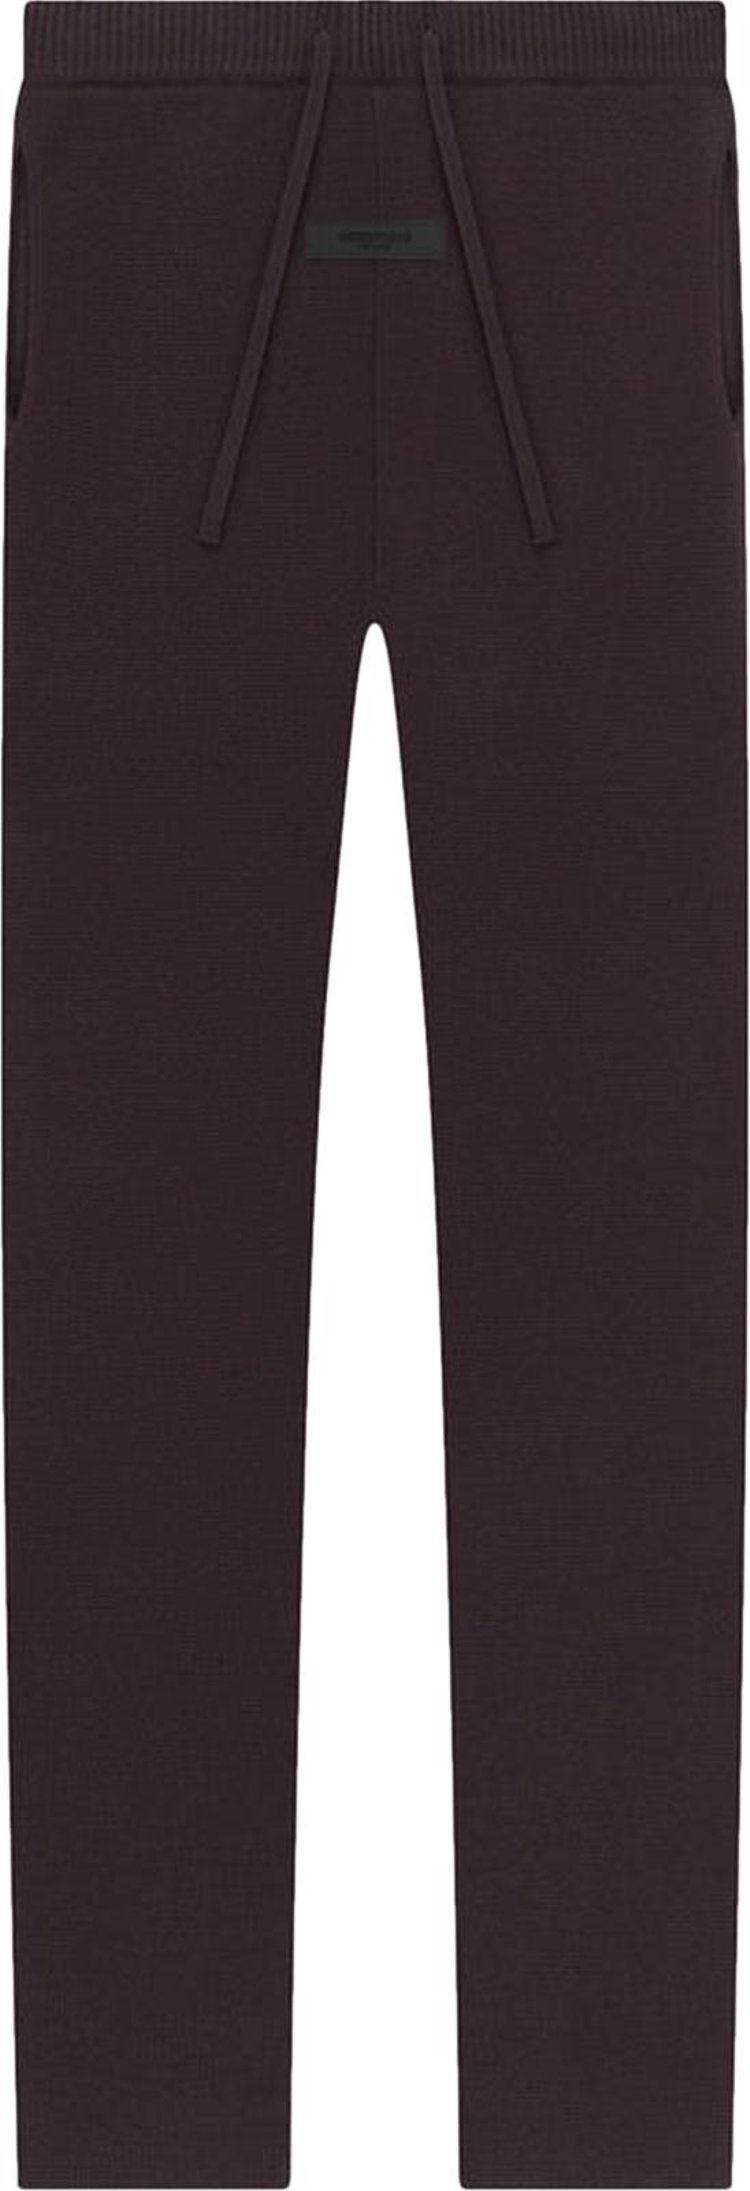 свитшот fear of god размер 6 7 лет коричневый Брюки Fear of God Essentials Knit Lounge Pant 'Plum', коричневый